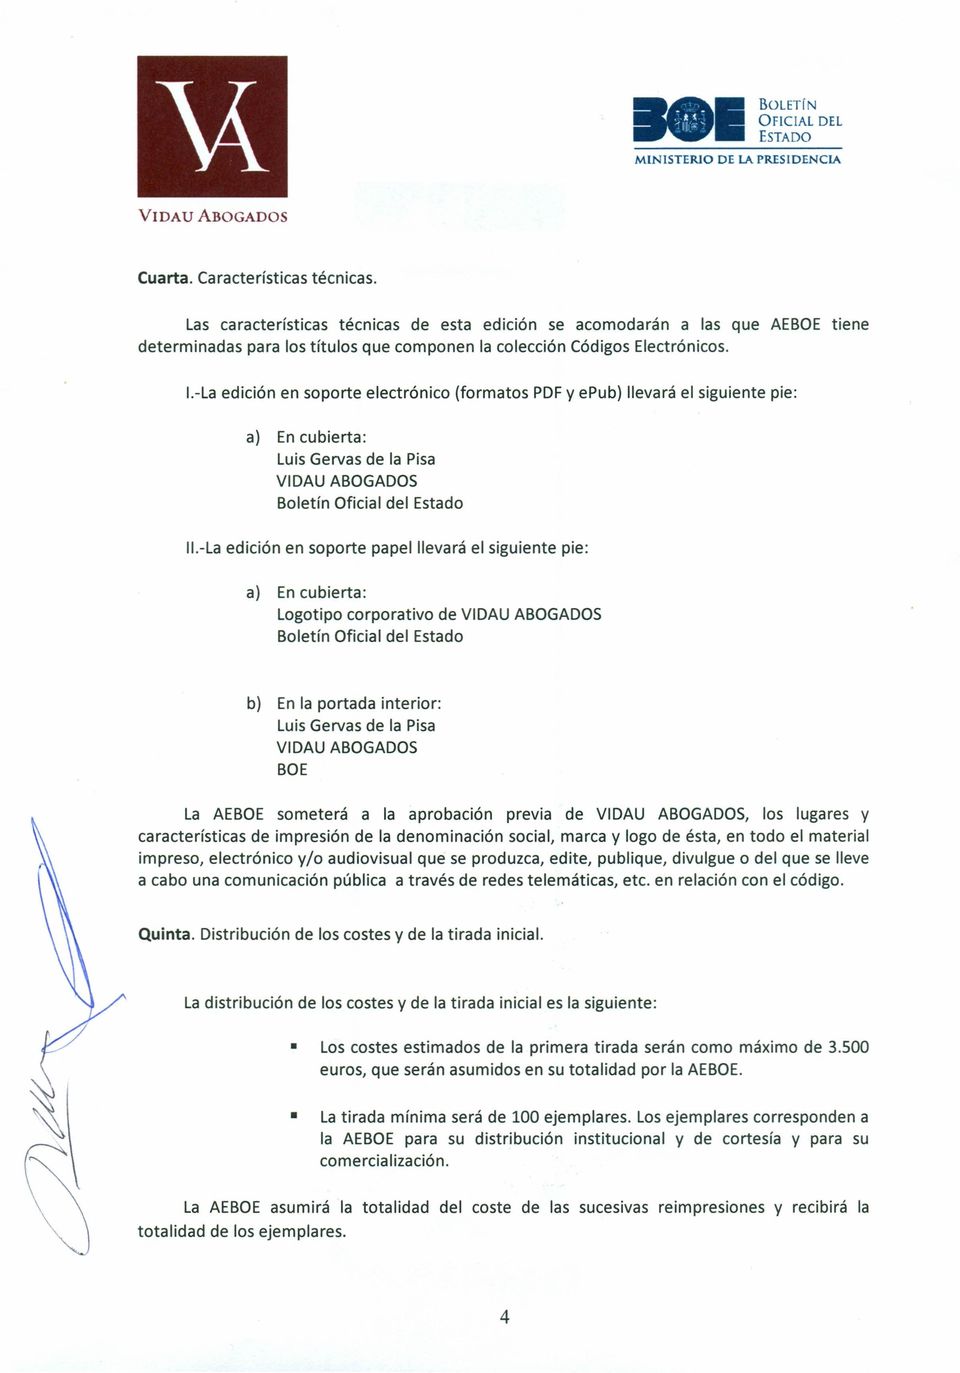 I-La edición en soporte electrónico (formatos PDF y epub) llevará el siguiente pie: a) En cubierta: Luis Gervas de la Pisa Boletín Oficial del Estado II.